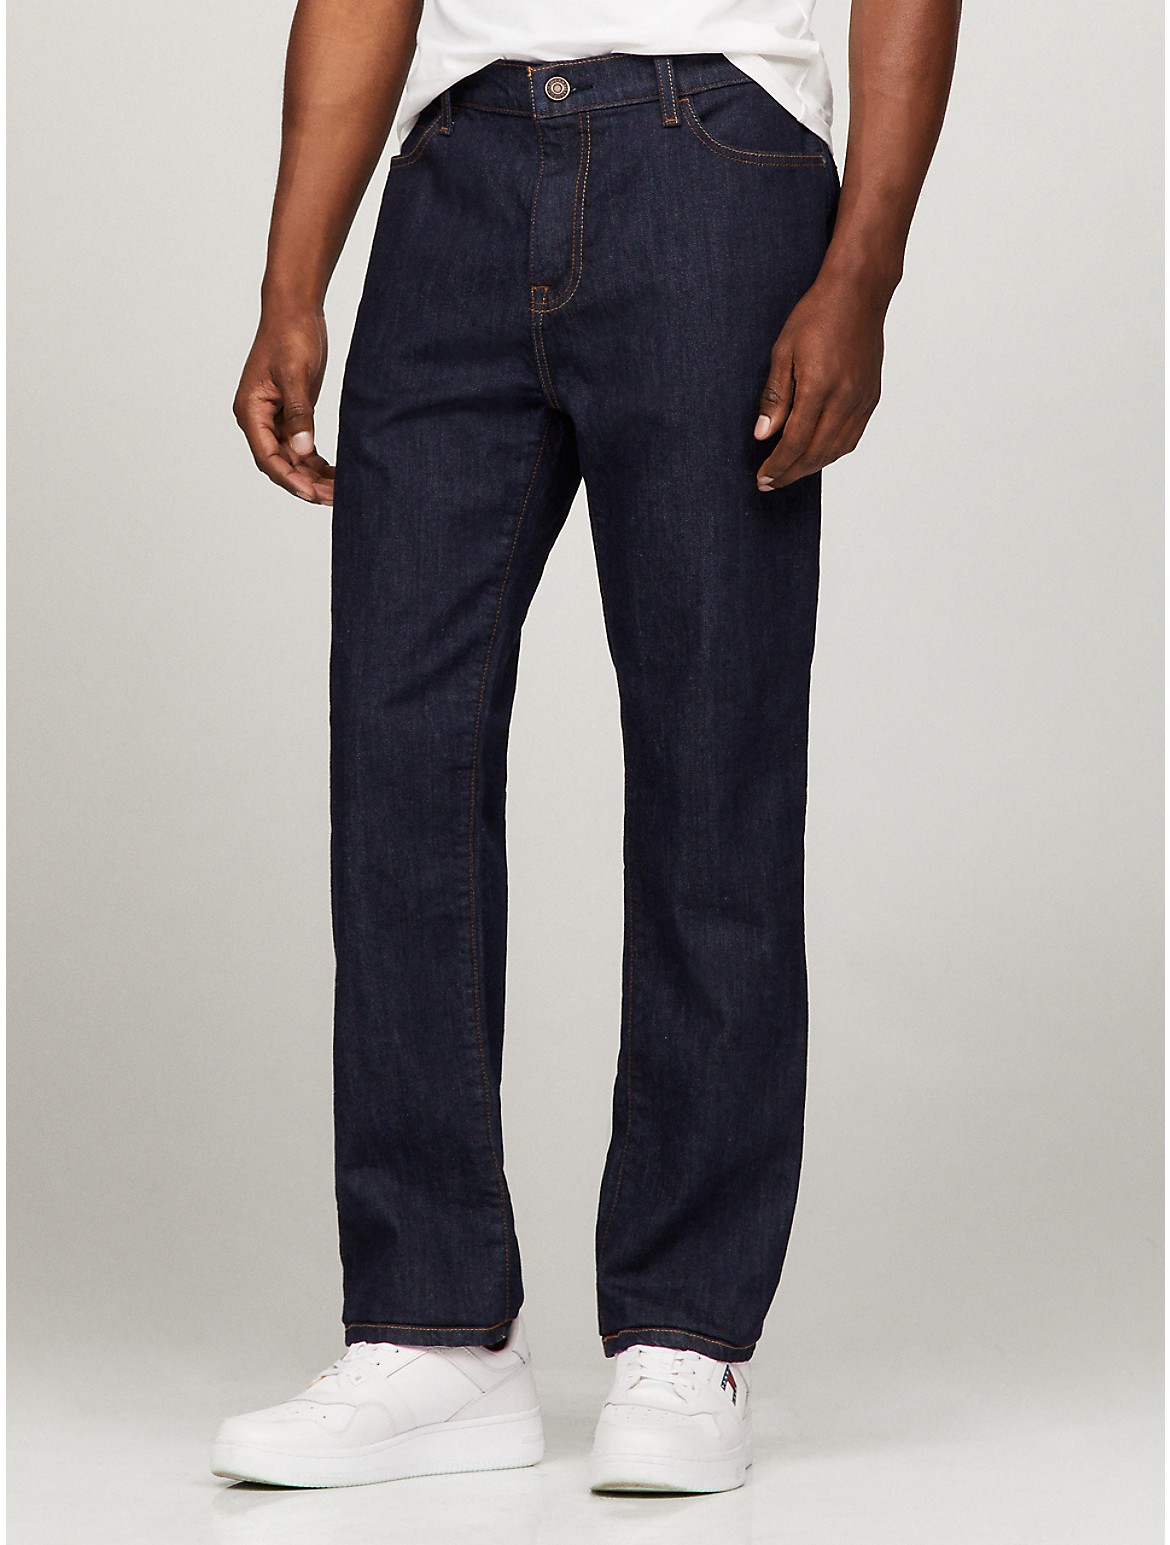 Tommy Hilfiger Men's Essential Straight Fit Dark Wash Jean